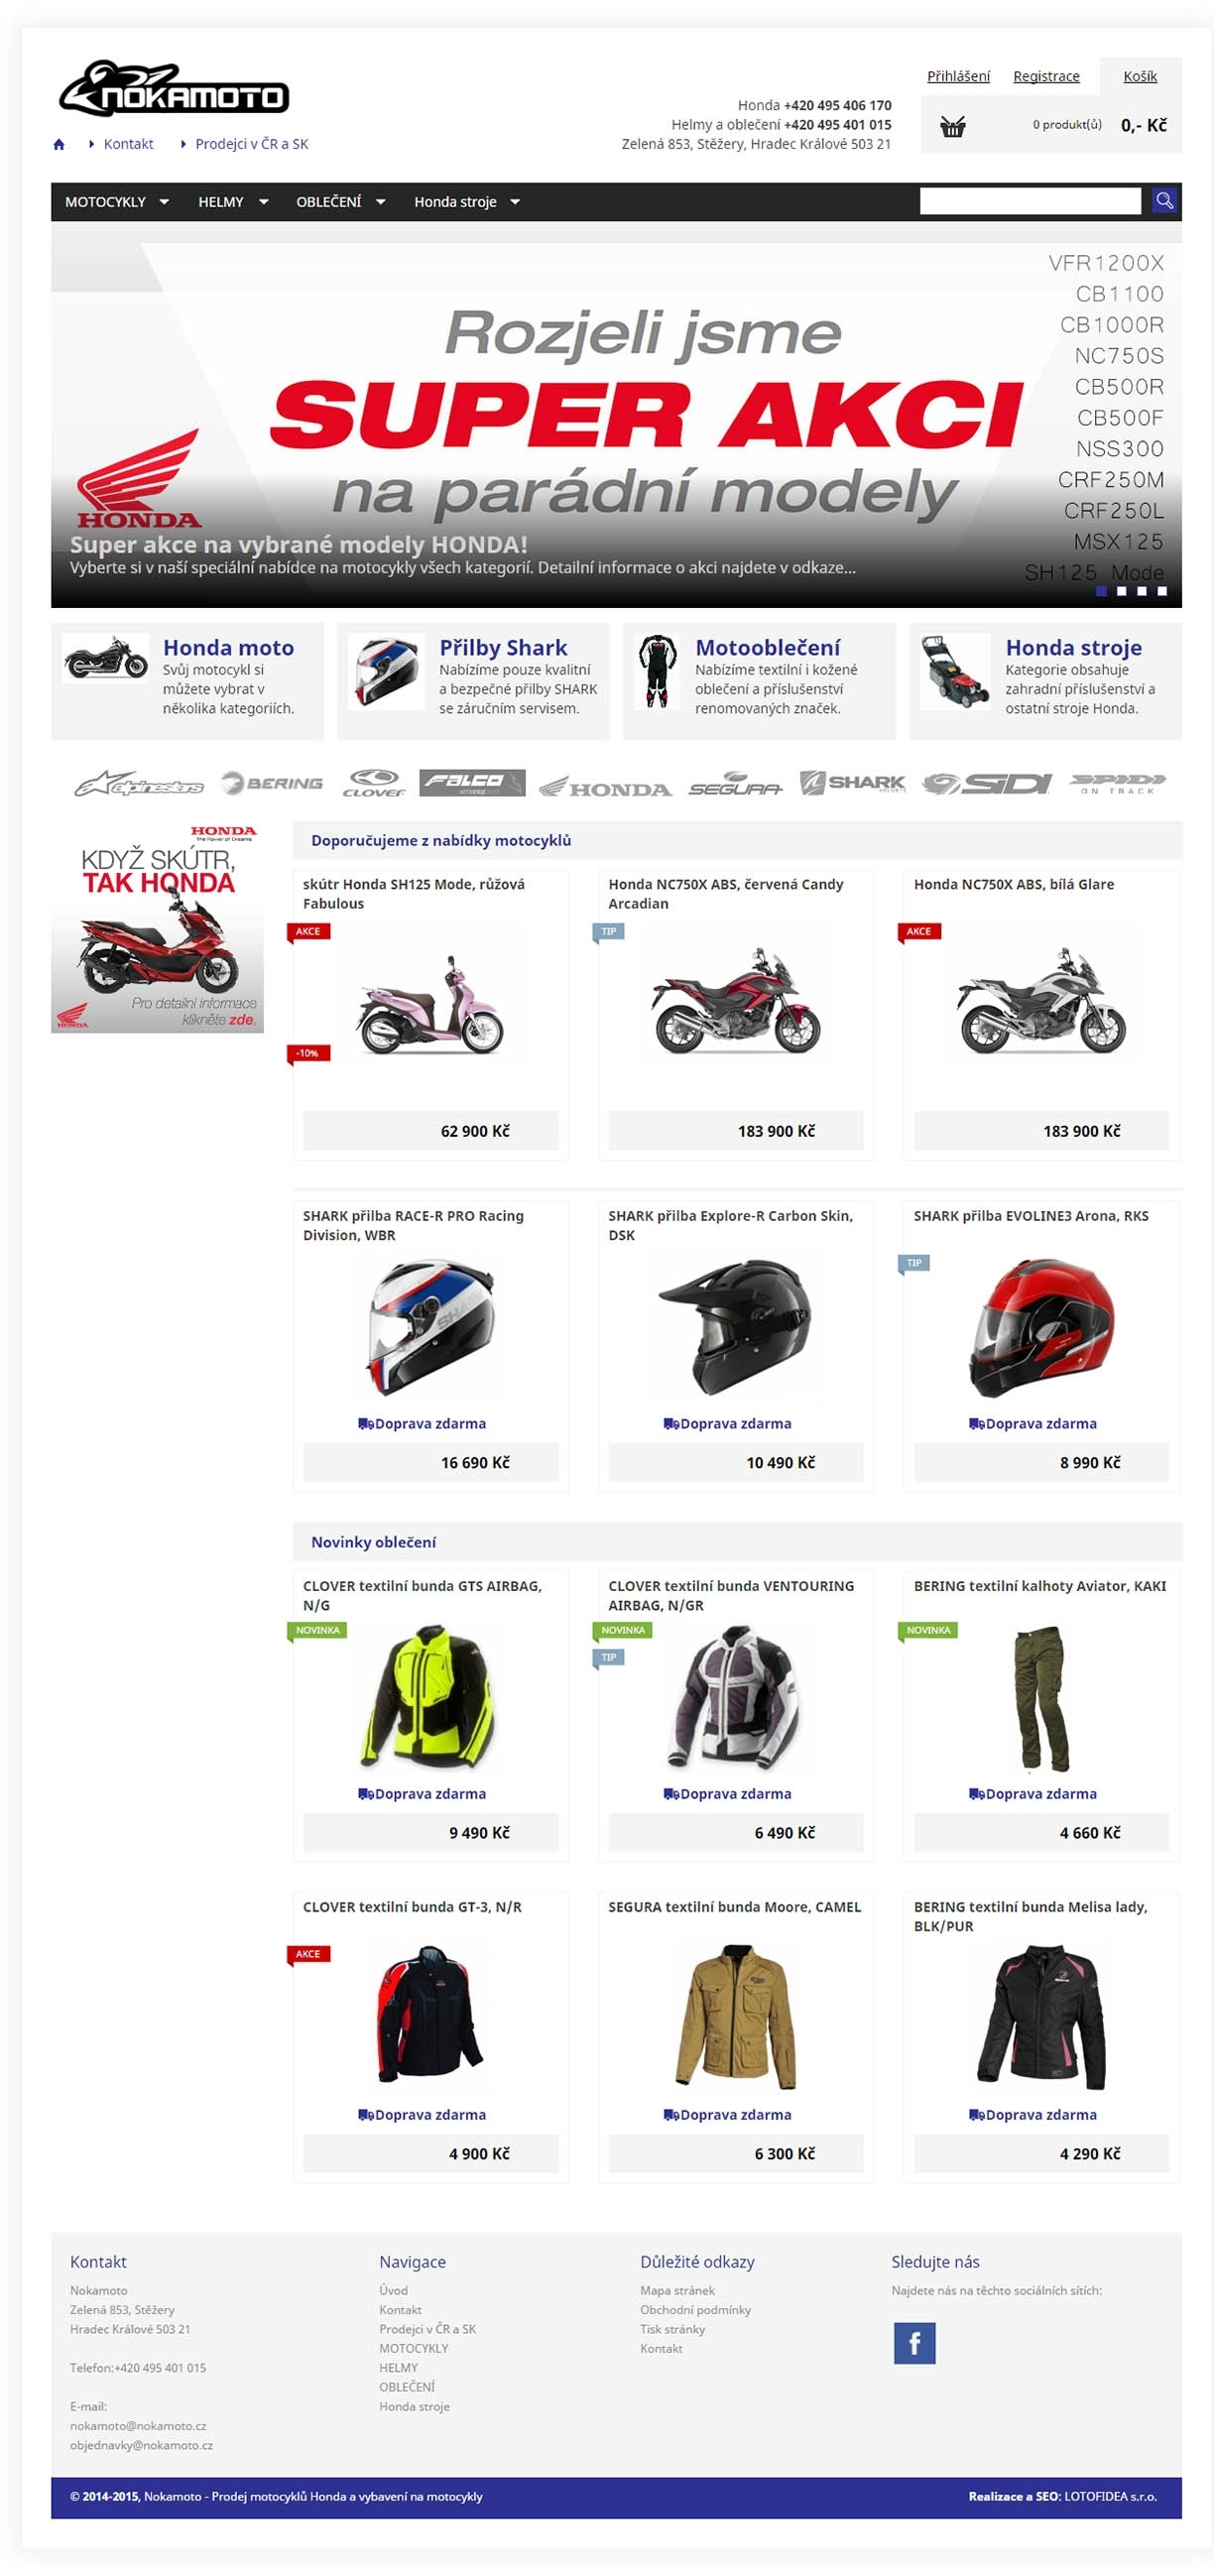 Nokamoto - prodej motocyklů a příslušenství